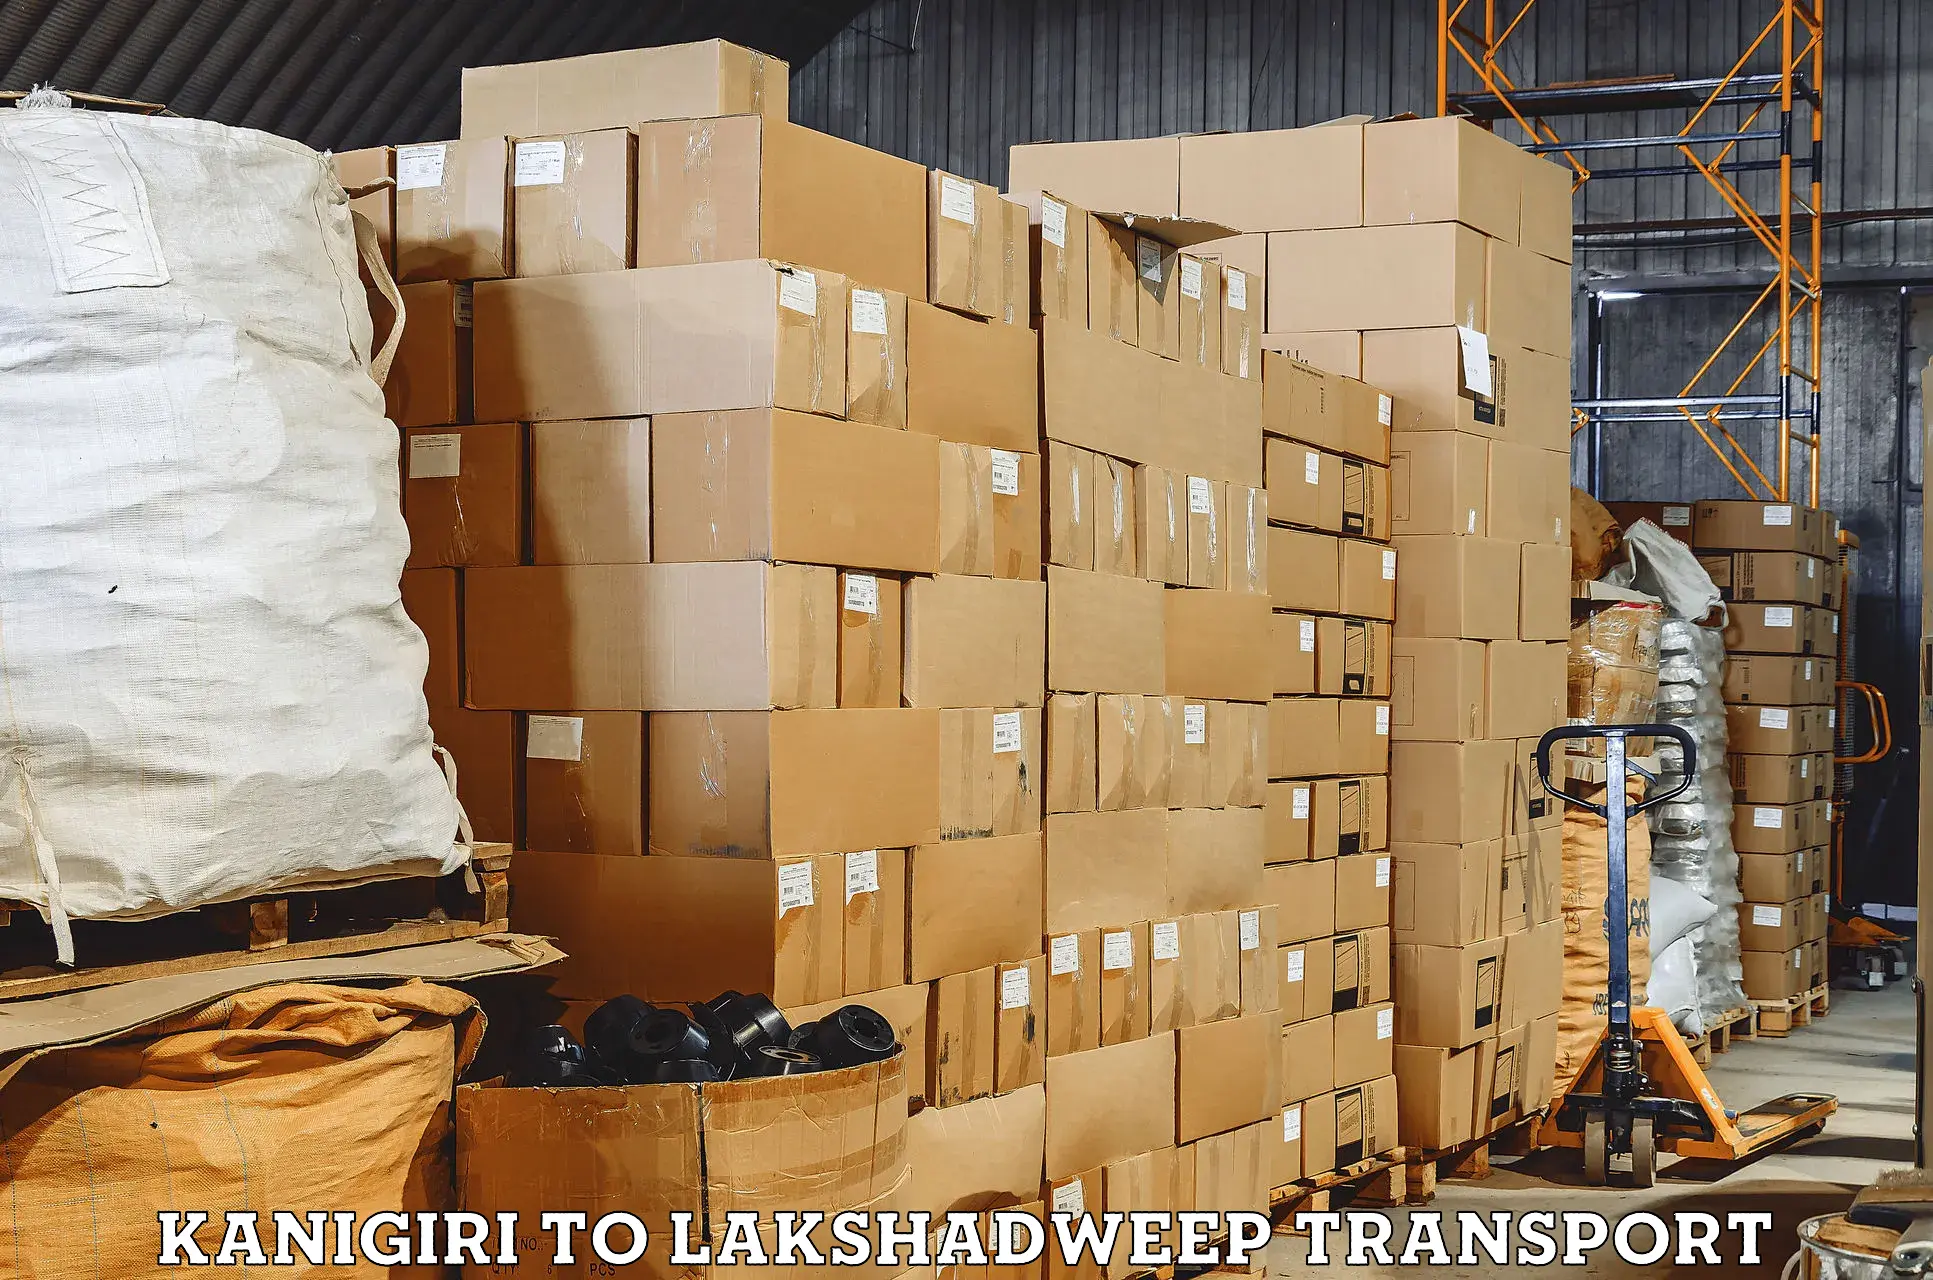 Two wheeler transport services Kanigiri to Lakshadweep